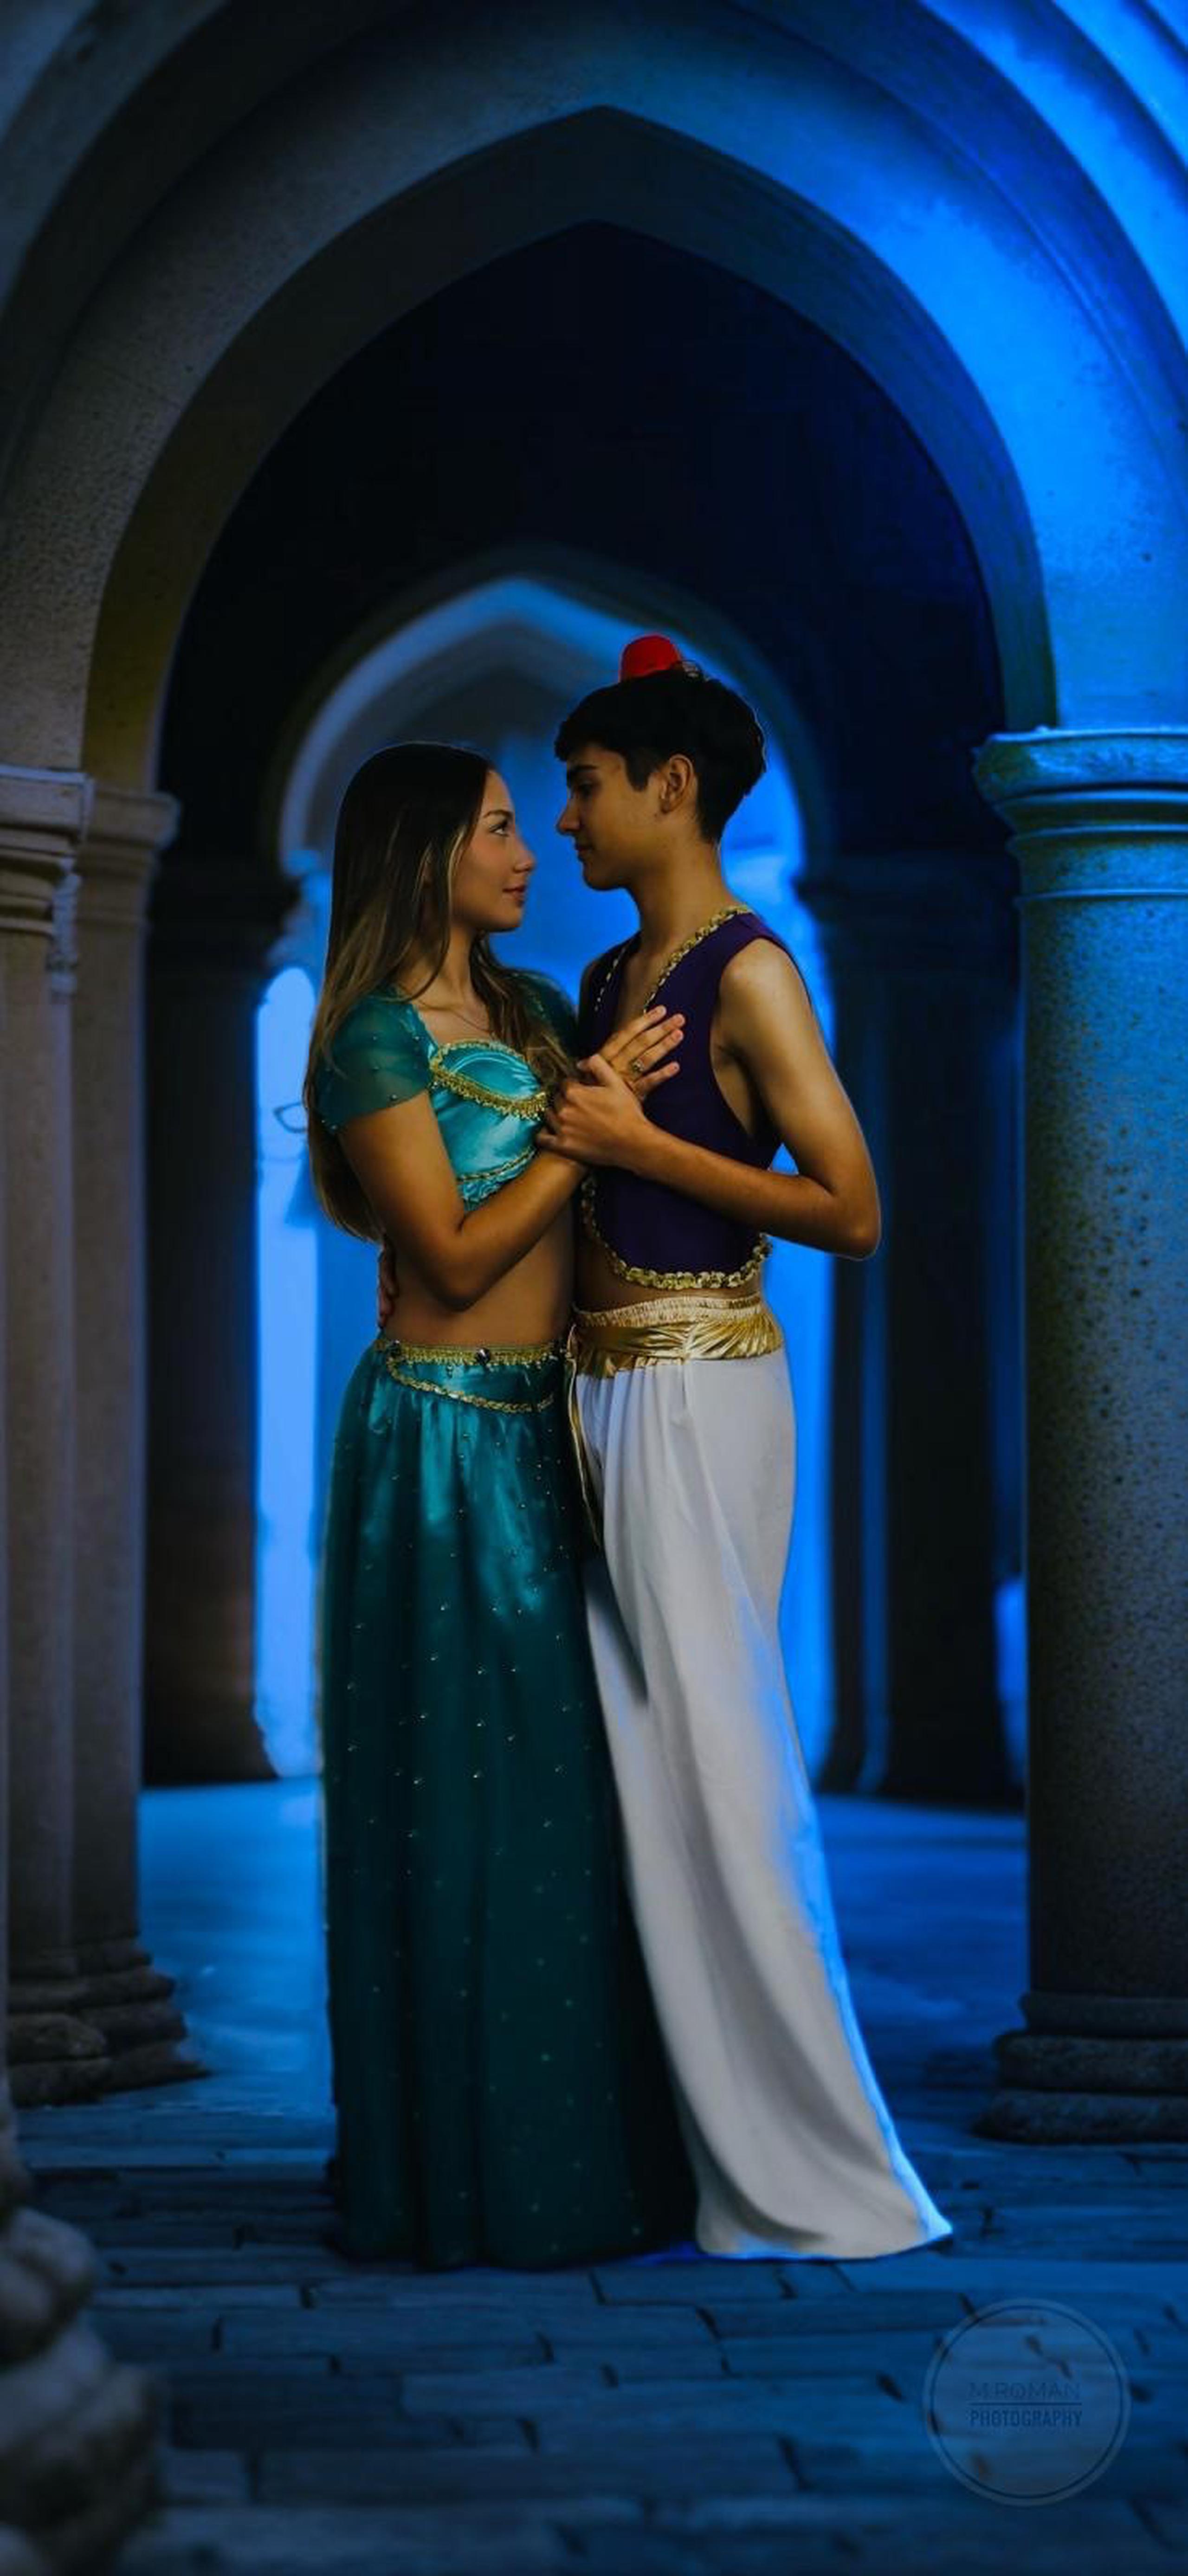 Jazmín, interpretada por la joven de duodécimo grado, Alexa Méndez; y Aladino, interpretado por Anthuan Crespo, de undécimo grado.